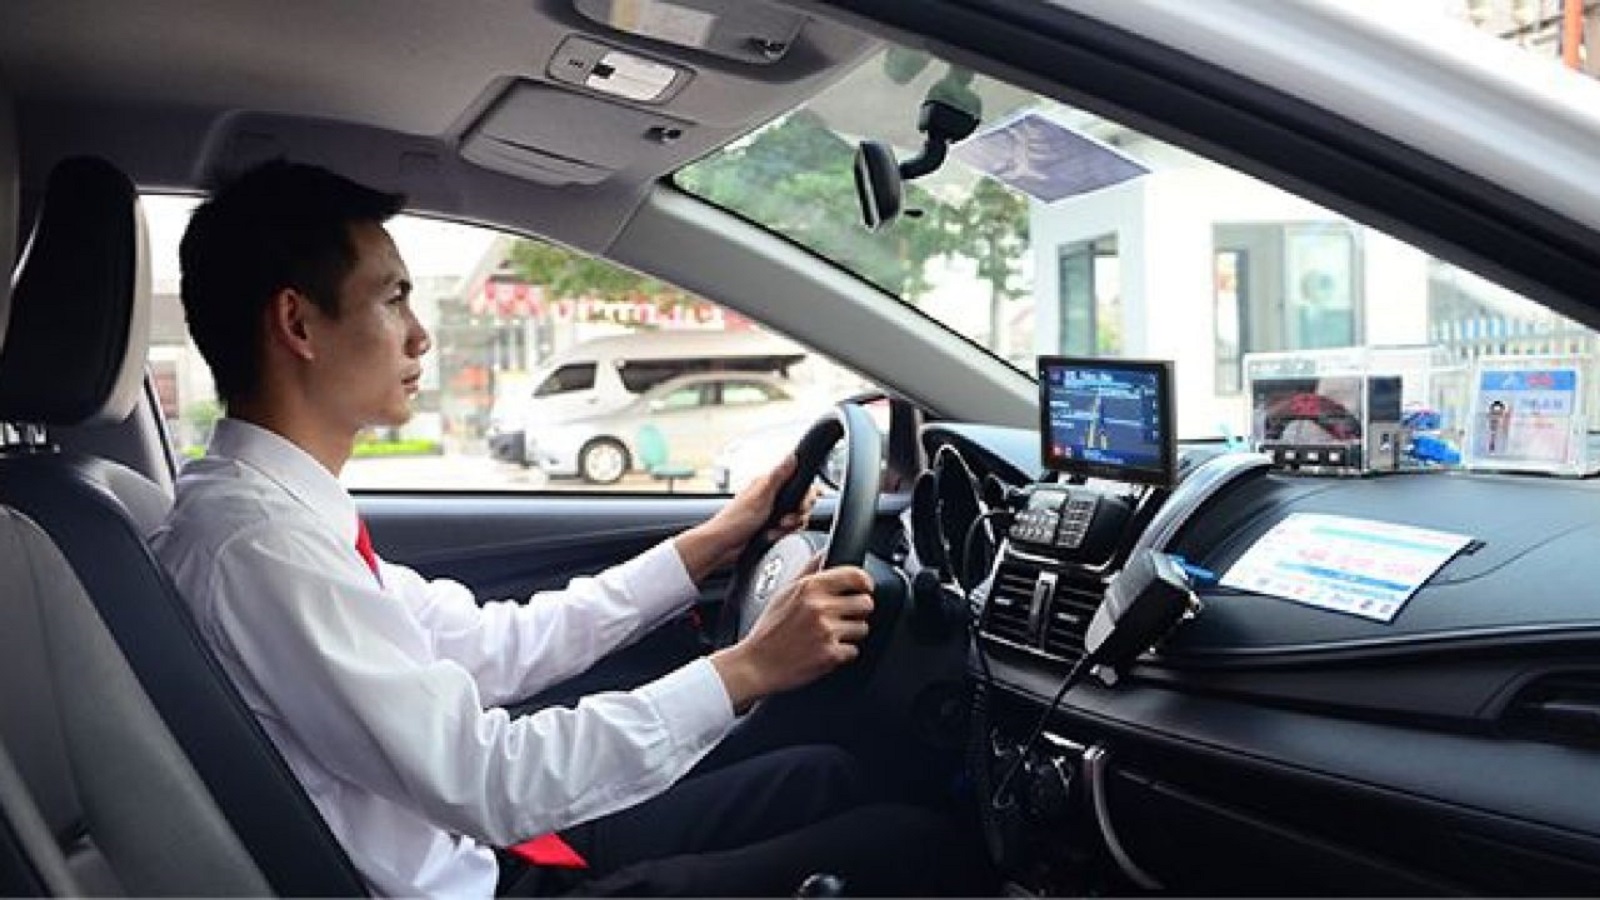 Kinh nghiệm lái xe ô tô lúc tắc đường trong thành phố cho lái mới - Ảnh 1.